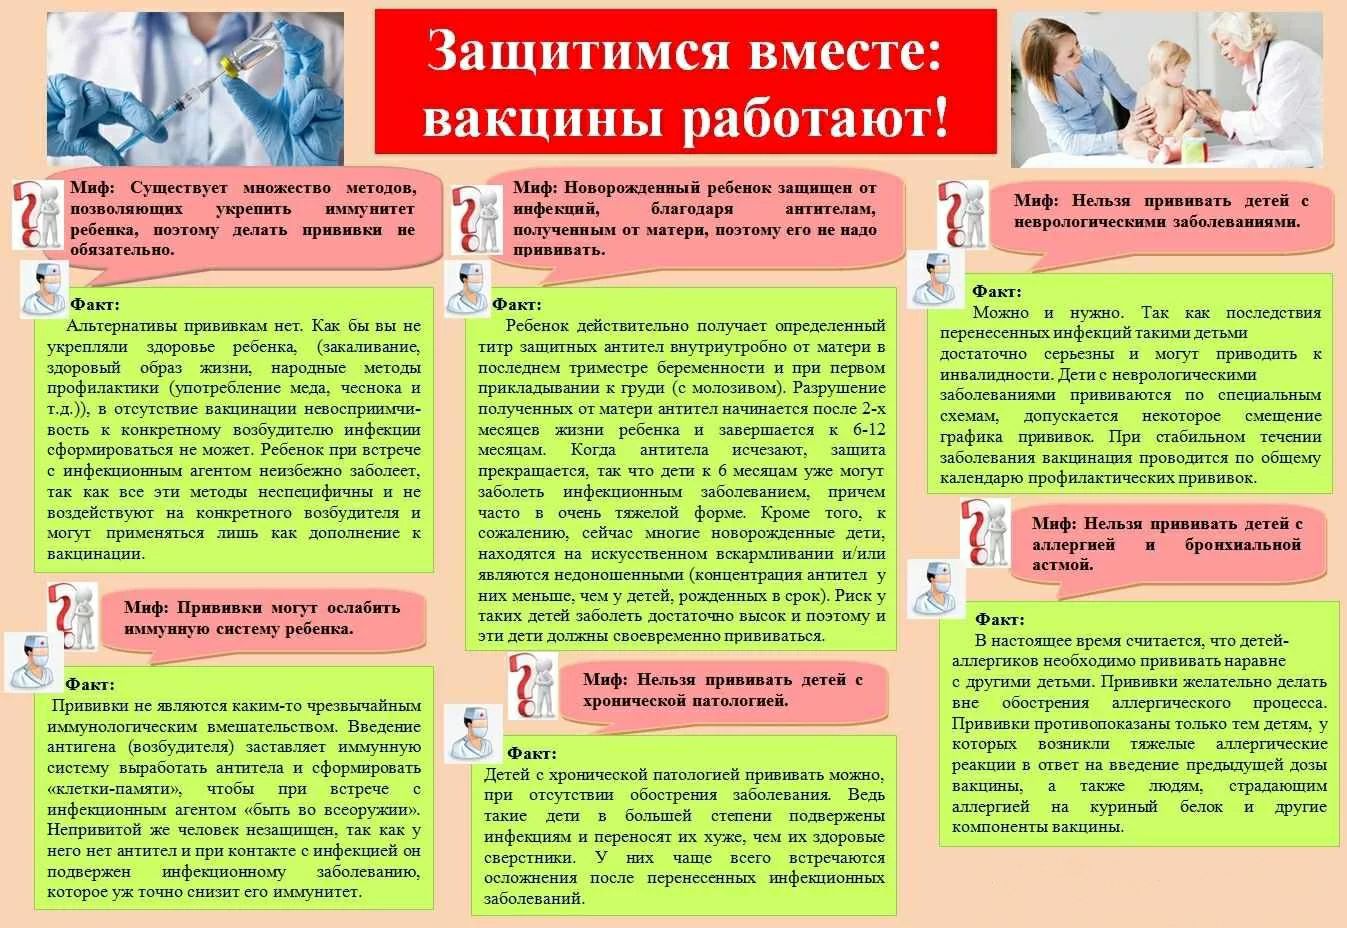 ZashchitimsyaVmeste VakcinyRabotayut